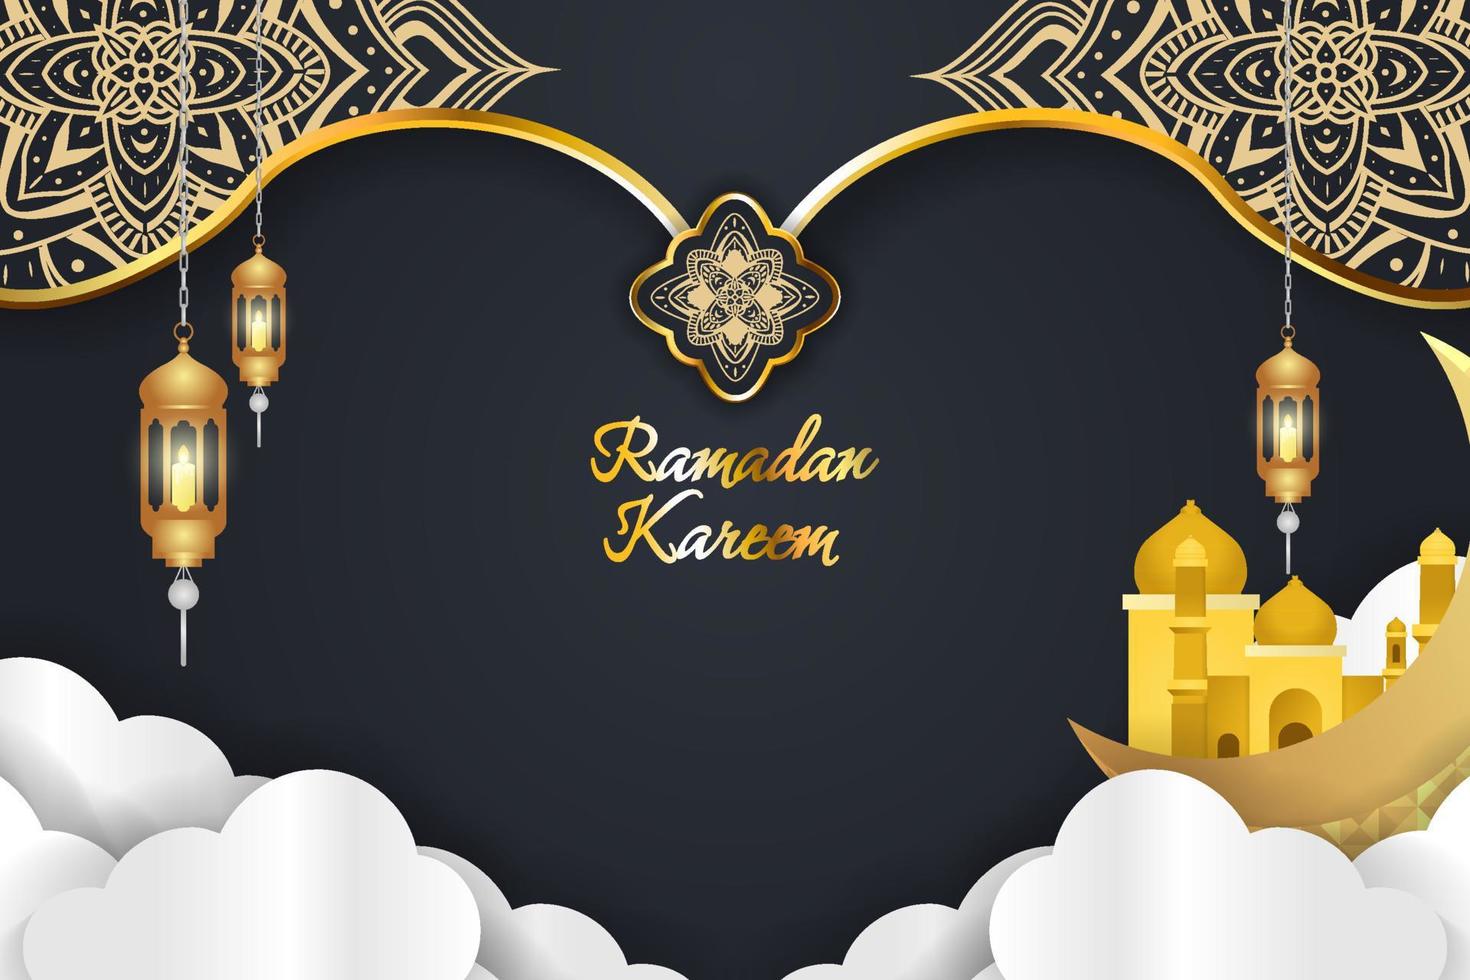 Ramadan Kareem đã đến và hãy cùng đón mừng nó với nền đen và vàng và đám mây như trong ảnh. Thiết kế này sẽ đem lại cho bạn một cảm giác đầy sinh động và tươi vui. Hãy nhanh tay xem thử để nhận được những trải nghiệm tuyệt vời nhất.